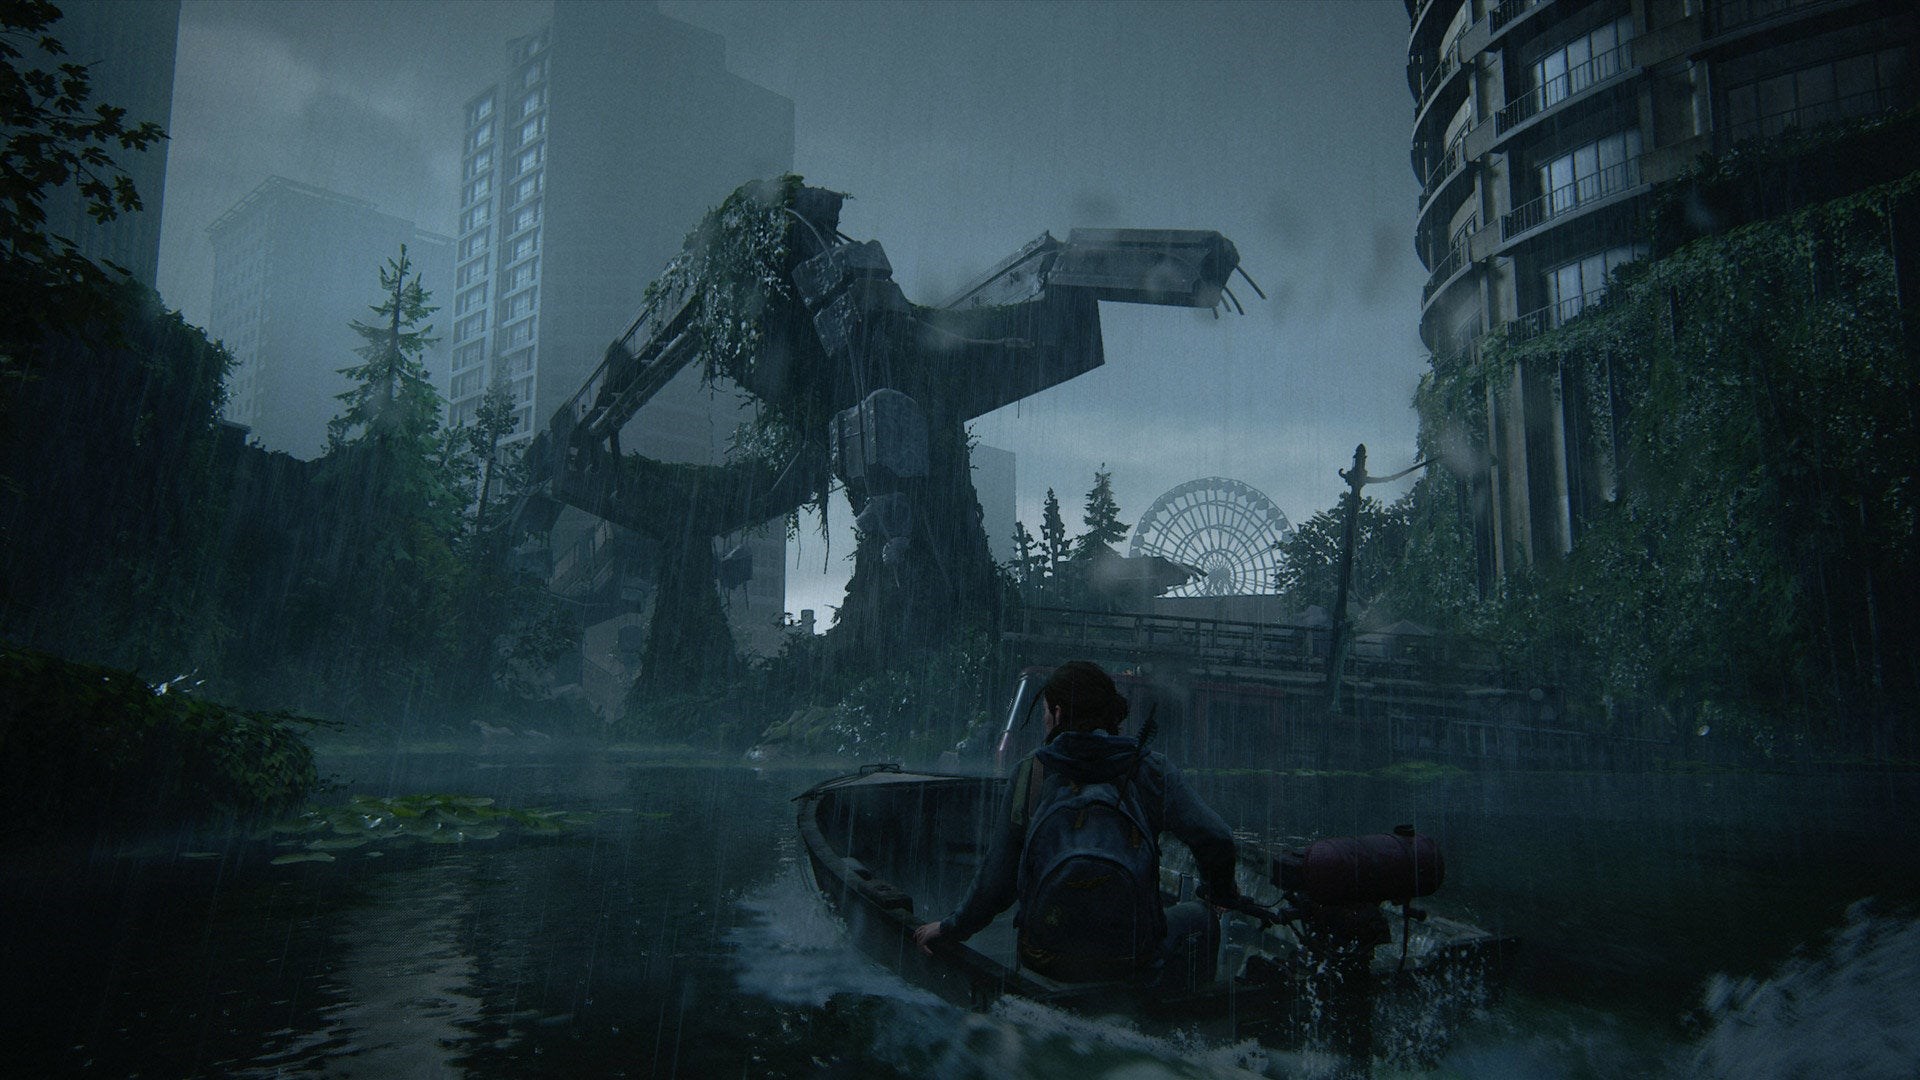 The Last of Us Part II incelemeleri, muazzam bir oyunun hayranları beklediğini söylüyor